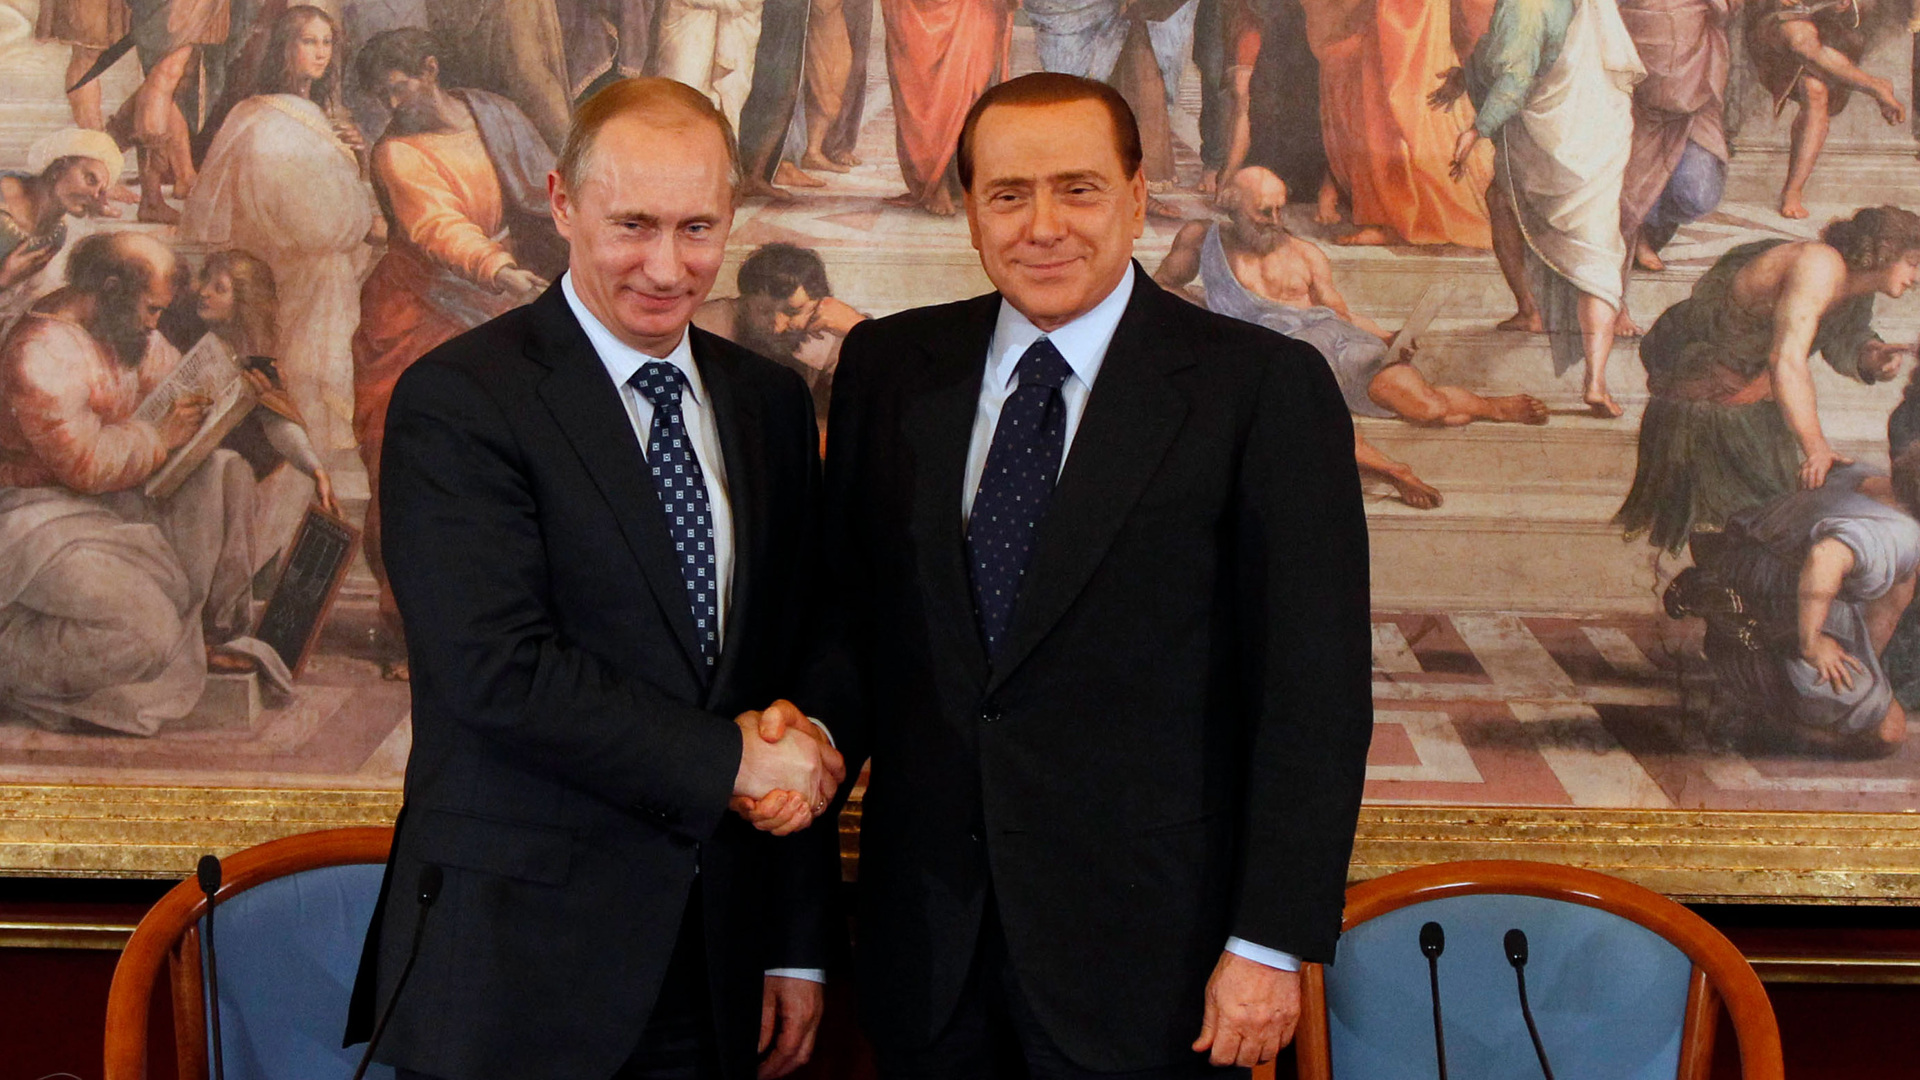 Личность мирового масштаба: что связывало Путина и Берлускони